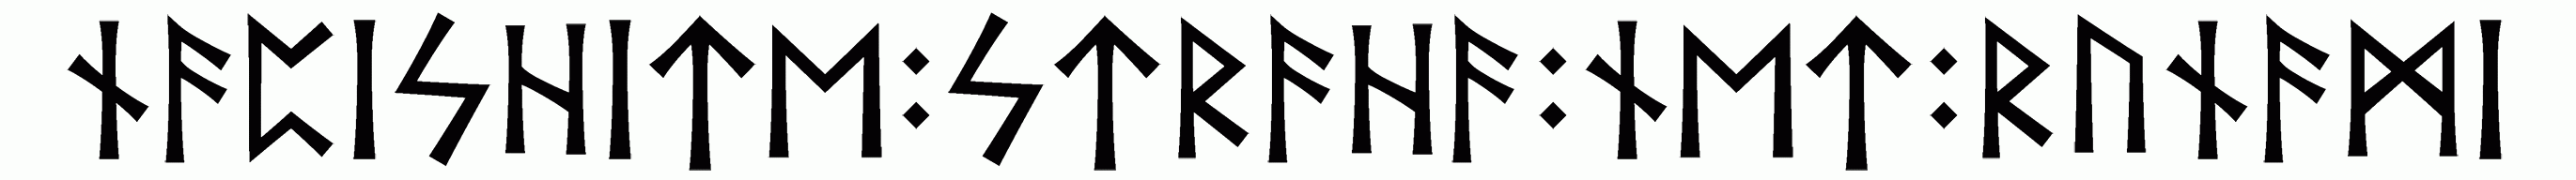 napishite+straha+net+runami - Напиши имя  НАПИШИТЕ+СТРАХА+НЕТ+РУНАМИ рунами  - ᚾᚨᛈᛁᛋᚺᛁᛏᛖ:ᛋᛏᚱᚨᚺᚨ:ᚾᛖᛏ:ᚱᚢᚾᚨᛗᛁ - Значение и характер имени  НАПИШИТЕ+СТРАХА+НЕТ+РУНАМИ - 